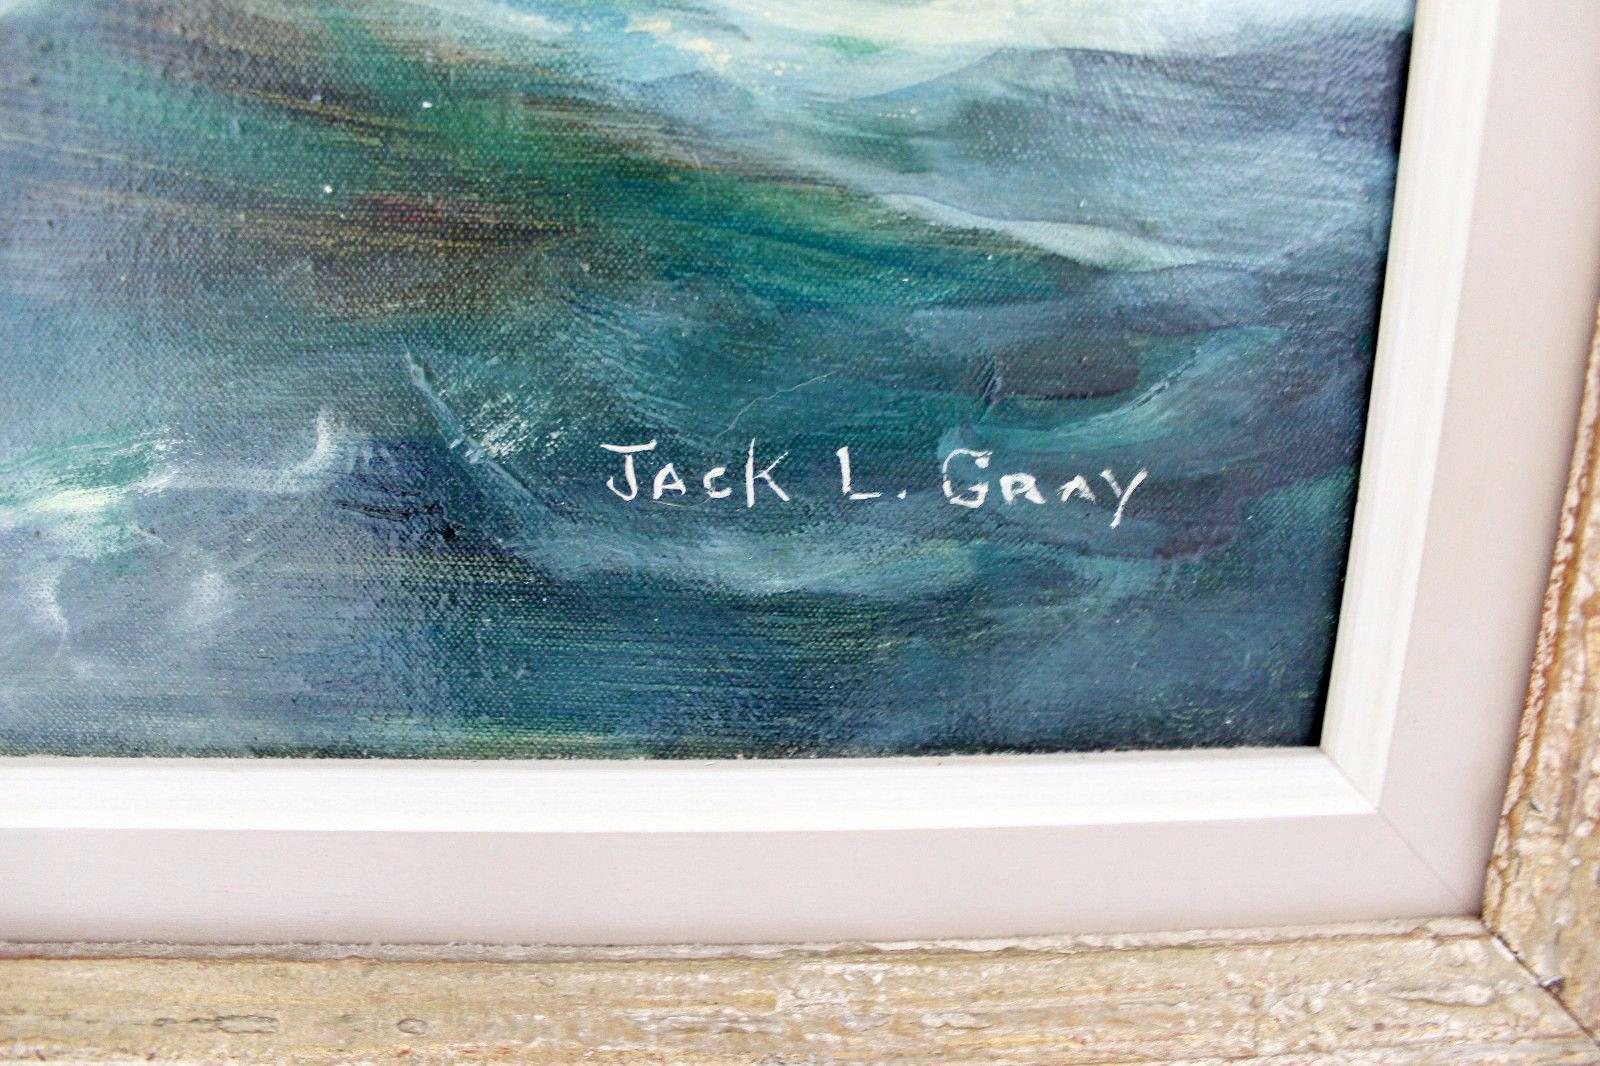 Jack Lorimer Gray, 1927-1981, wurde in Halifax, Nova Scotia, als Sohn schottischer Eltern geboren. Sein Talent als Künstler wurde von E. Wyly Grier entdeckt, als Gray noch ein Kind war. Er besuchte ein Jahr lang das Nova Scotia College of Art,